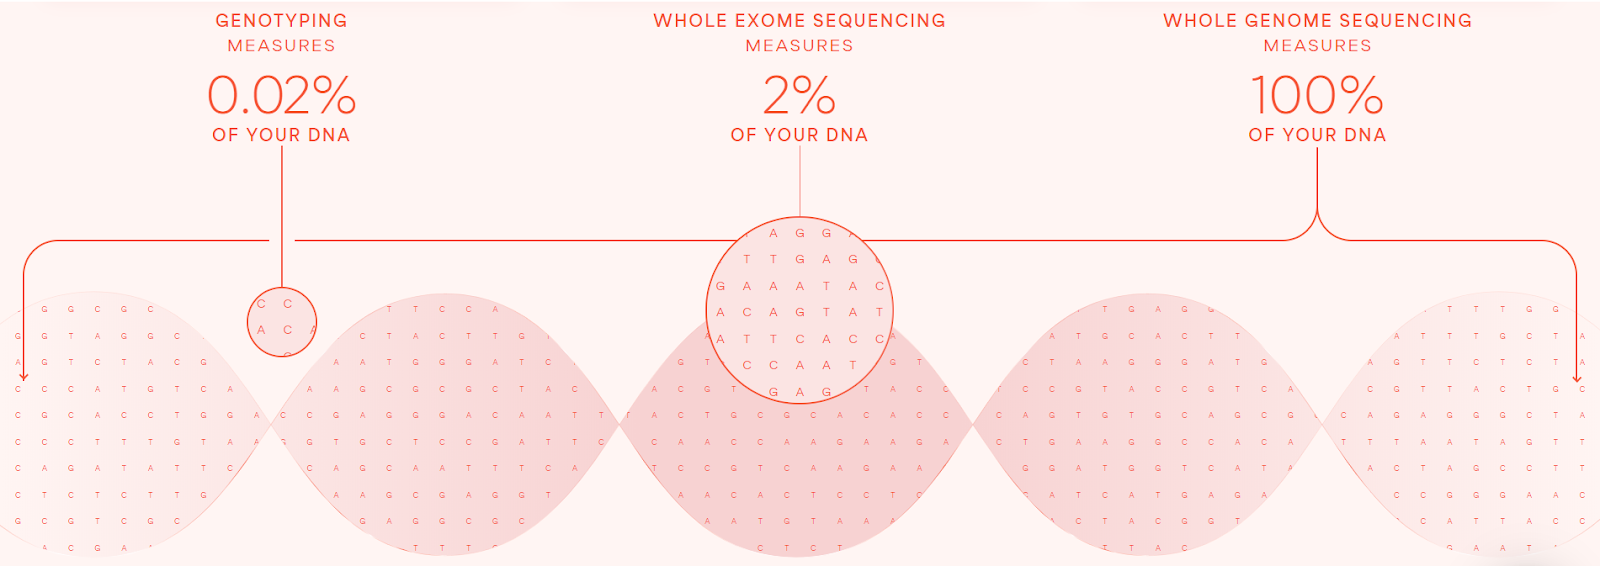 رسم تخطيطي يوضح النسبة المئوية من الحمض النووي التي تم قياسها عن طريق التنميط الجيني وتسلسل الإكسوم الكامل وتسلسل الجينوم الكامل في Sano Genetics